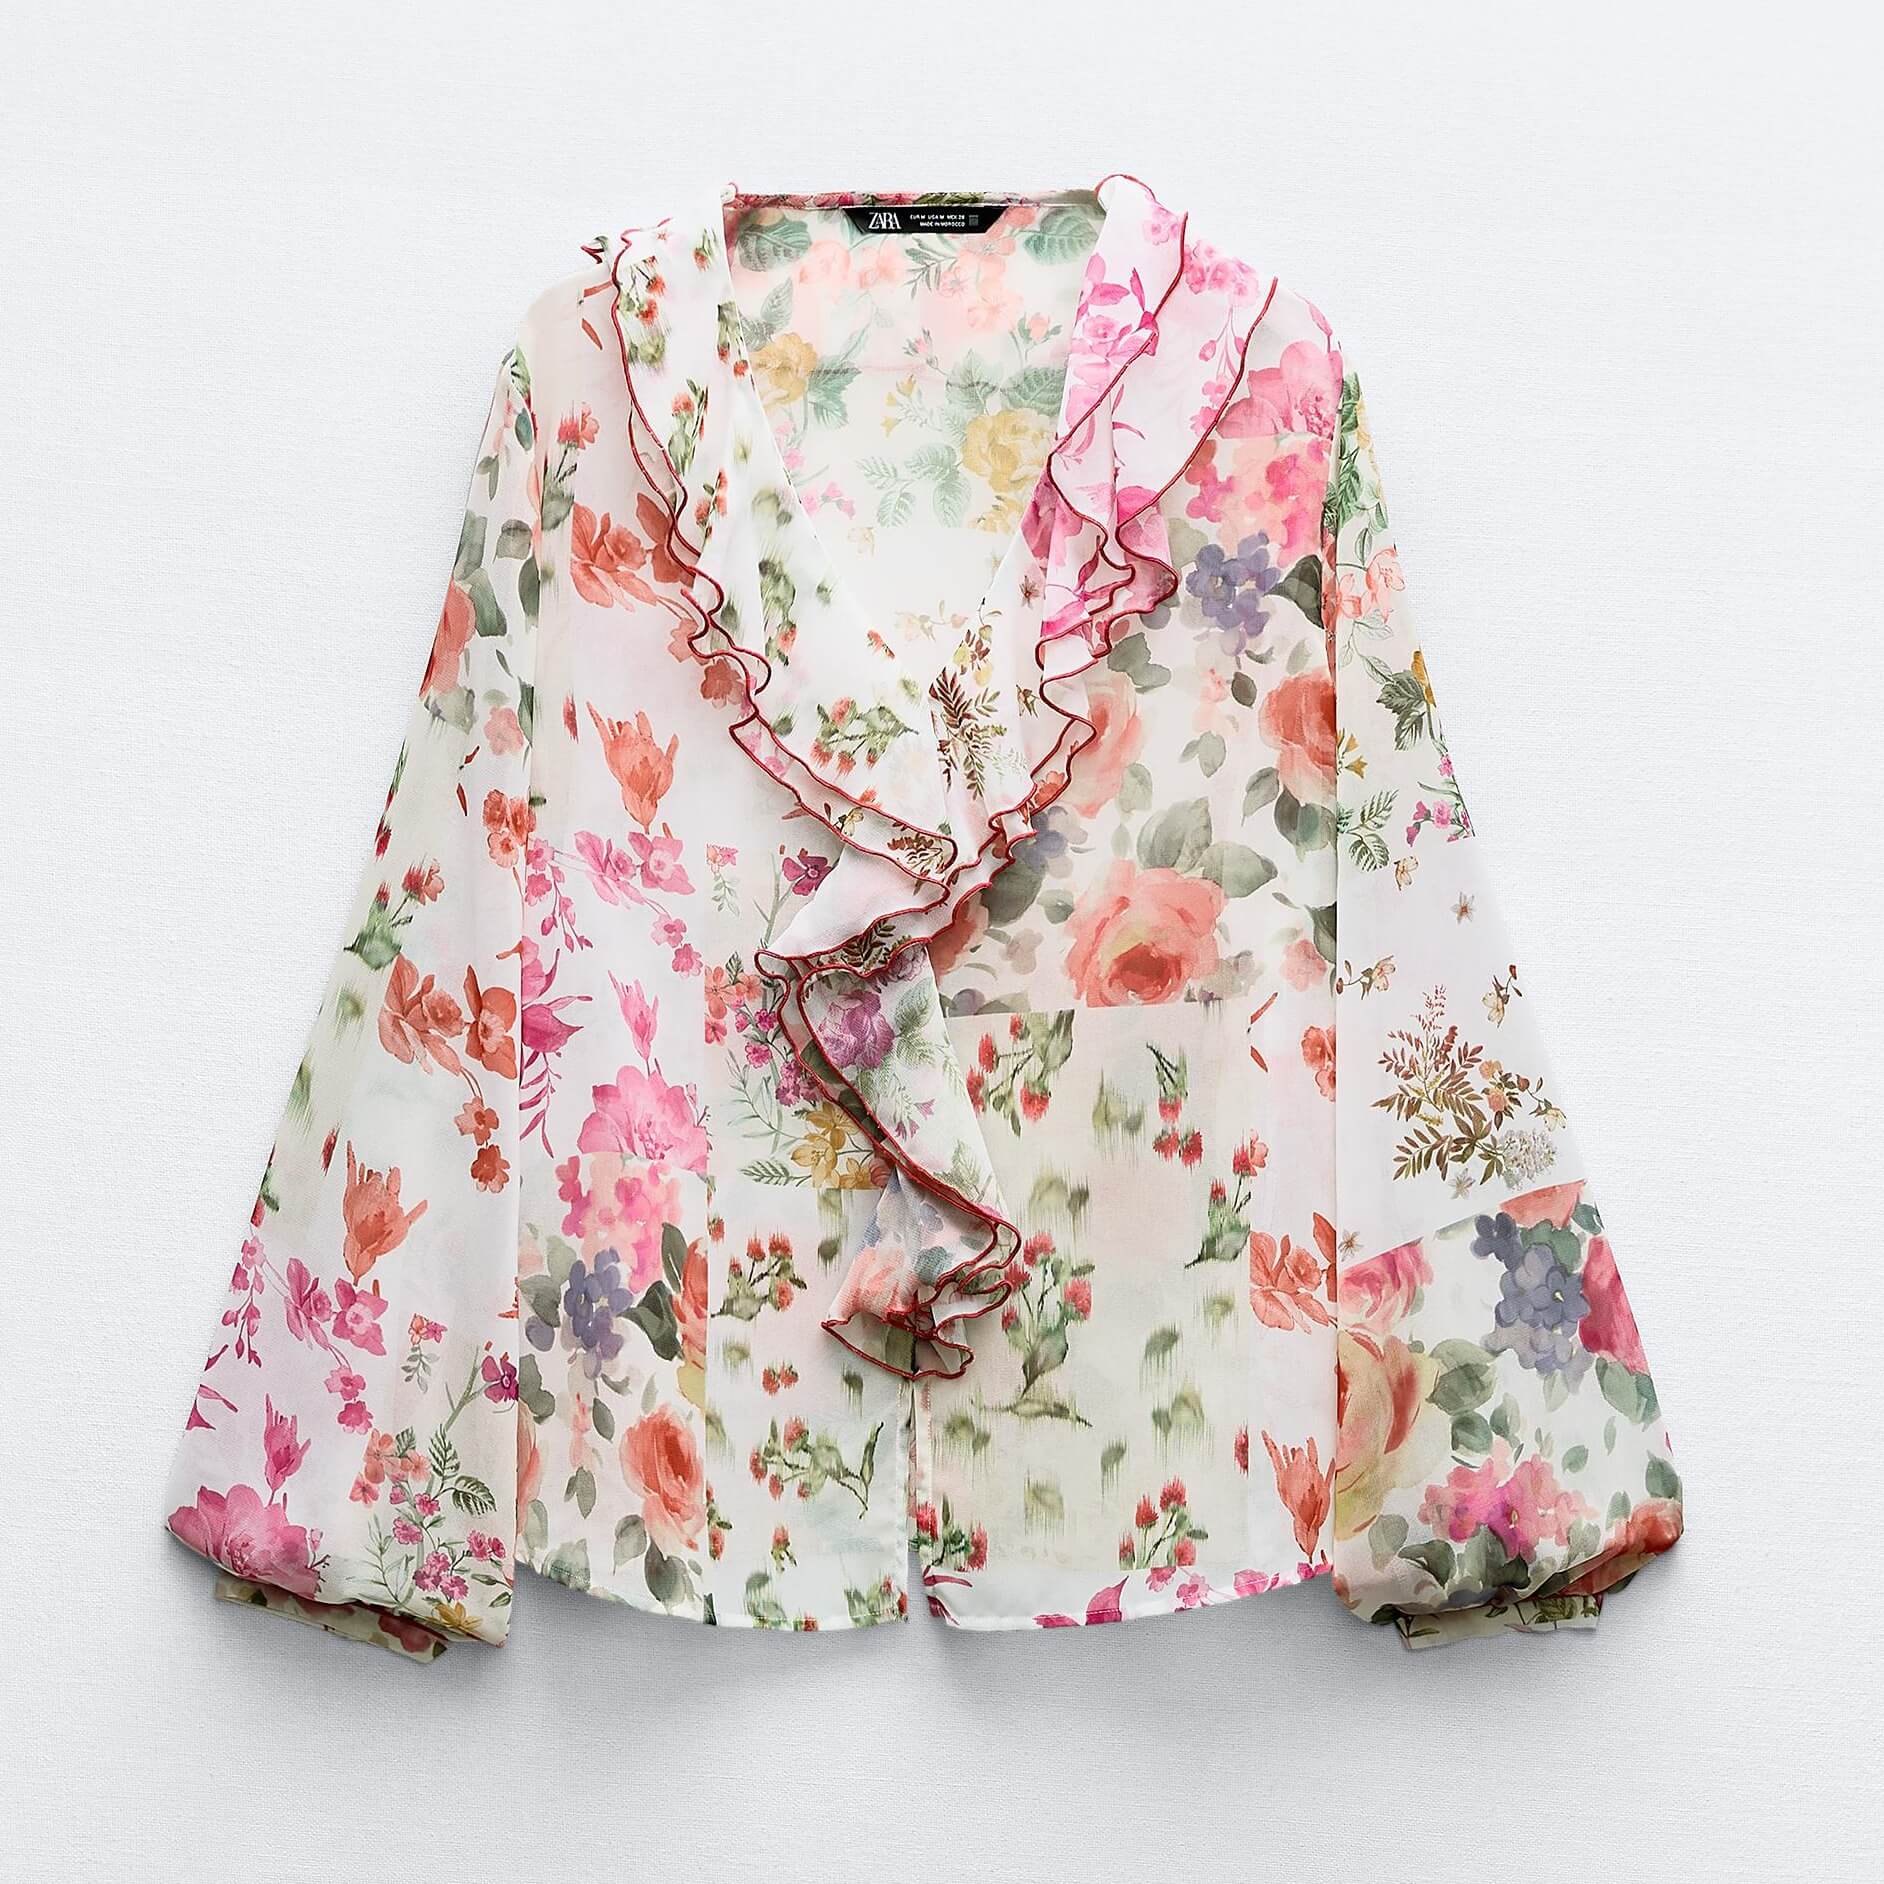 Блузка Zara Ruffled With Floral Print, мультиколор блузка в полоску с v образным вырезом и длинными рукавами 36 fr 42 rus бежевый